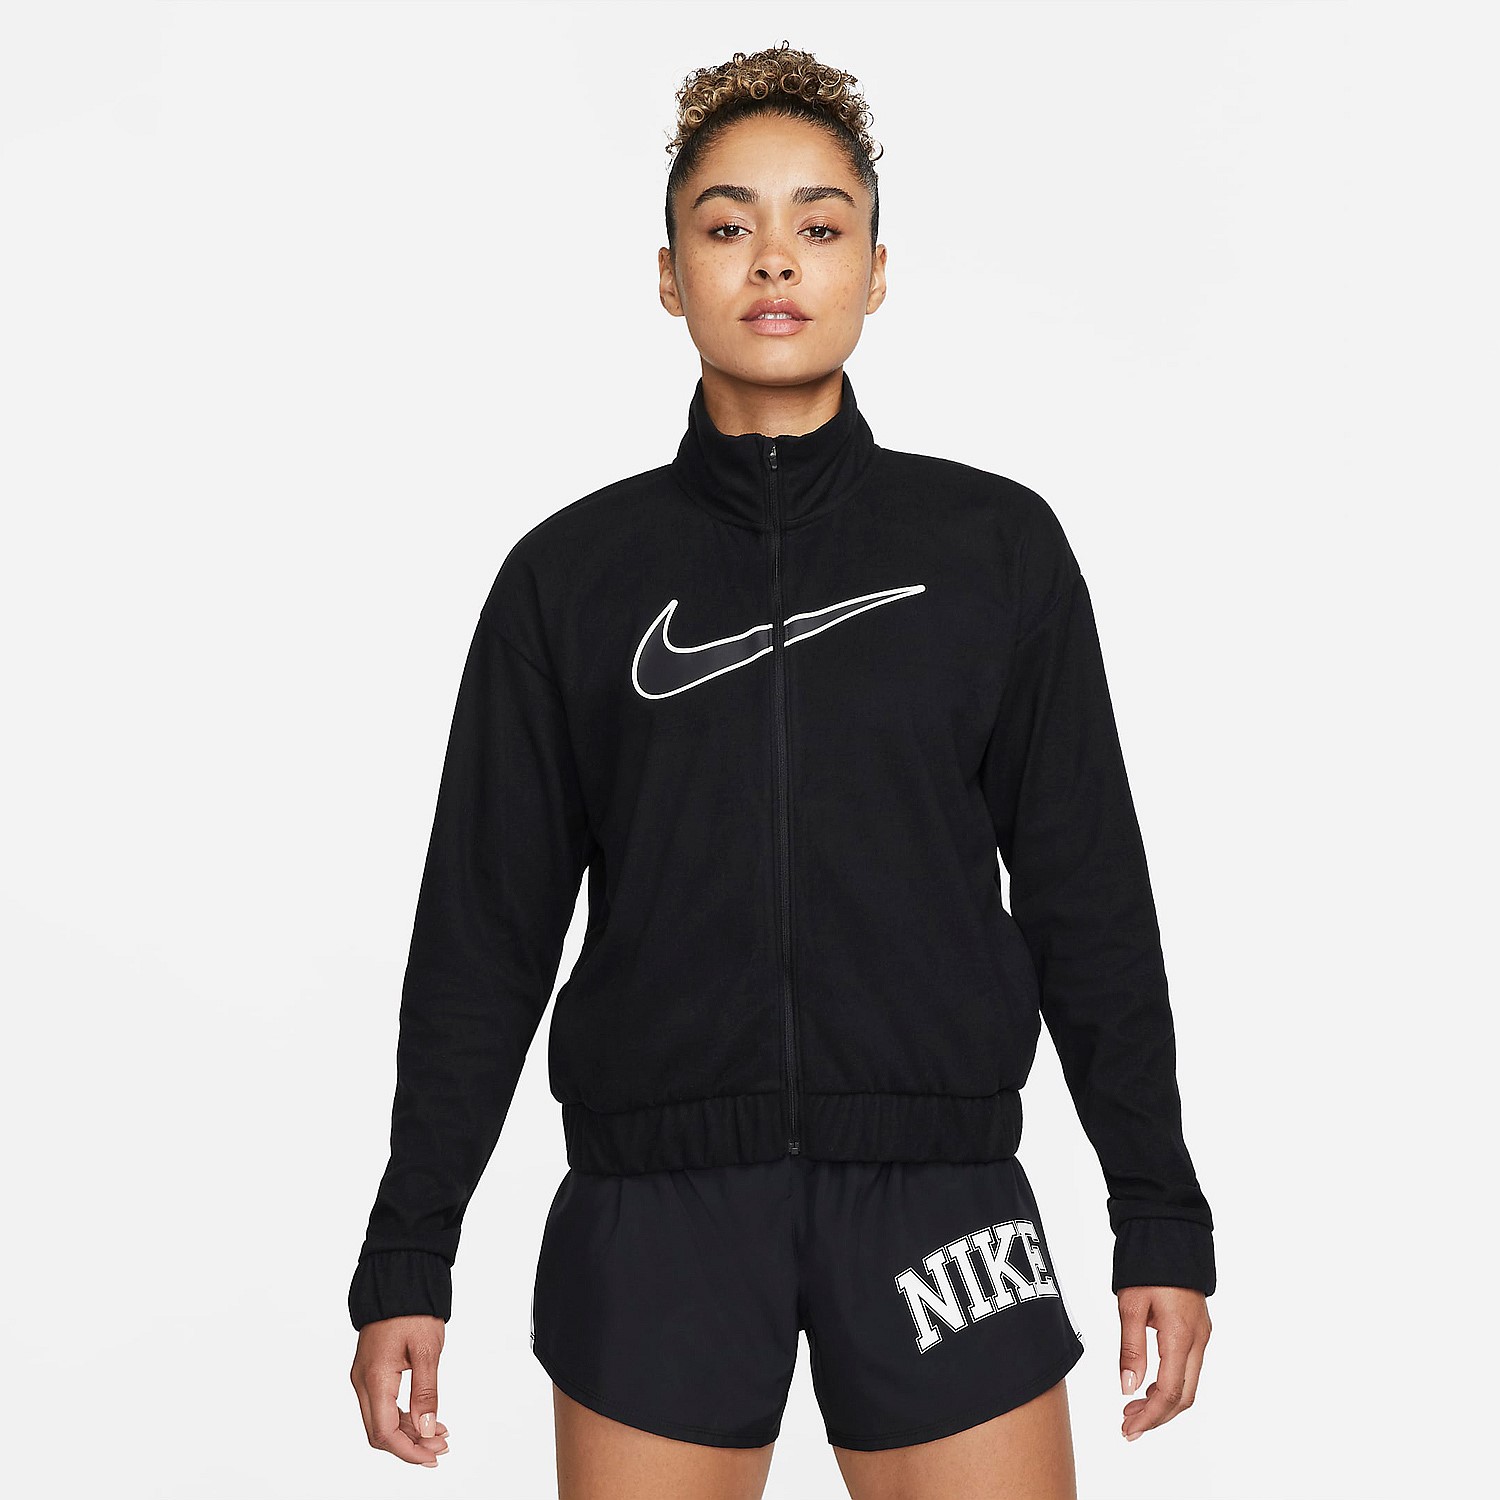 Nike Dri-FIT Run Jacket | Jacket | Stirling Sport